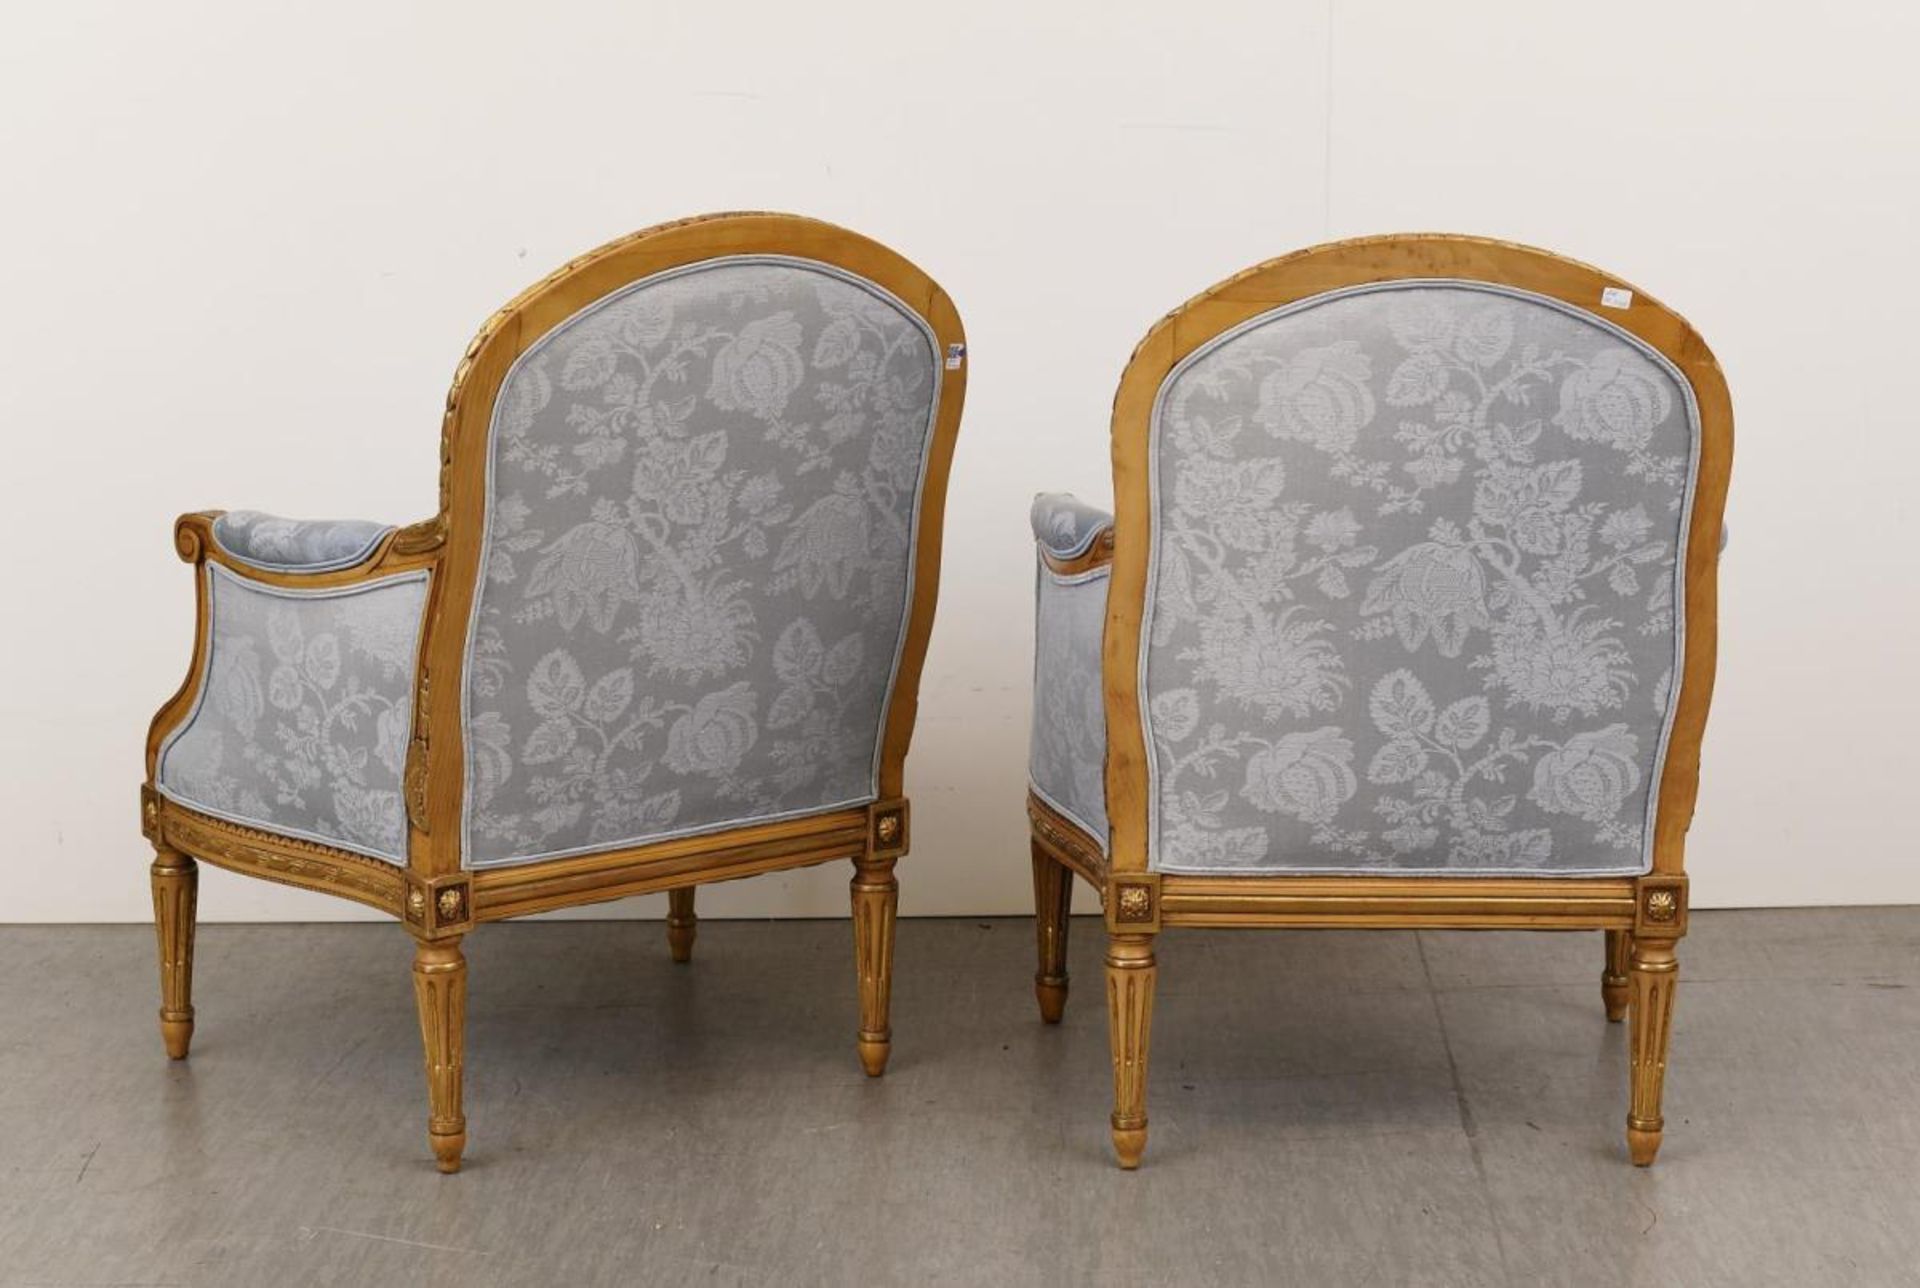 Ein Paar Armlehnstühle. Barockstil | Holz, beschnitzt, gold- und ockerfarben gefasst. - Bild 2 aus 2